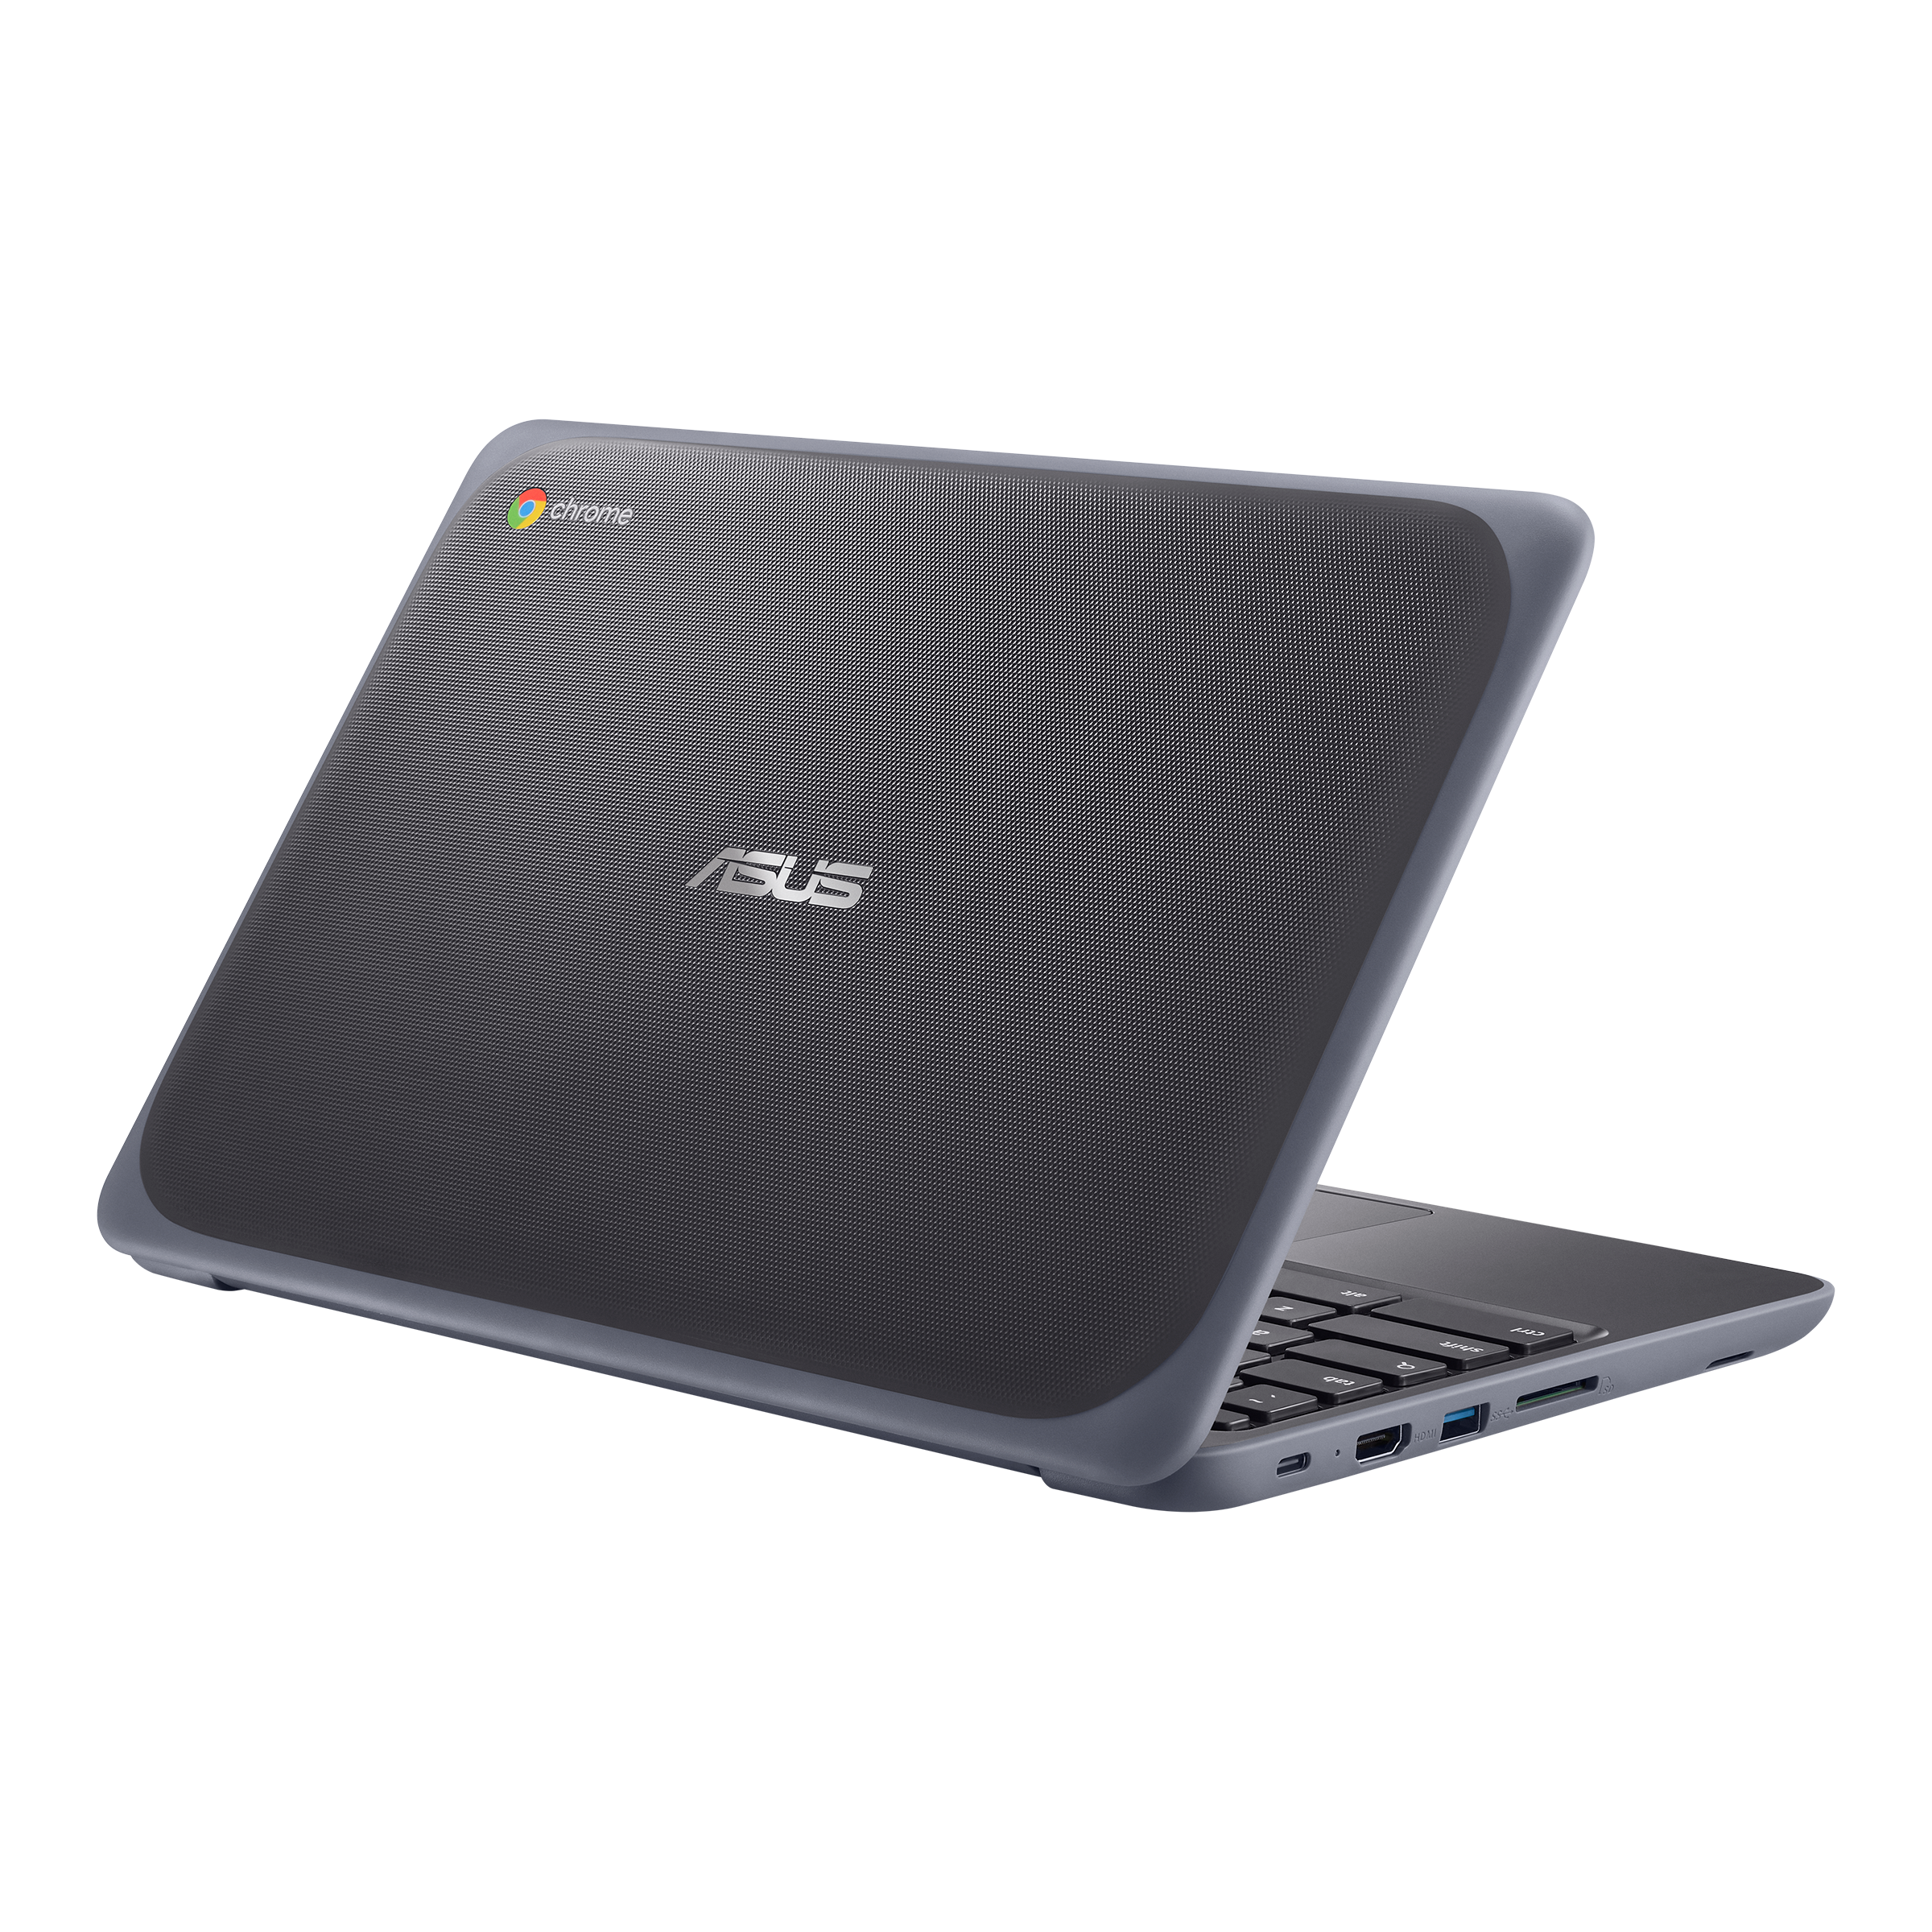 ASUS Chromebook C202